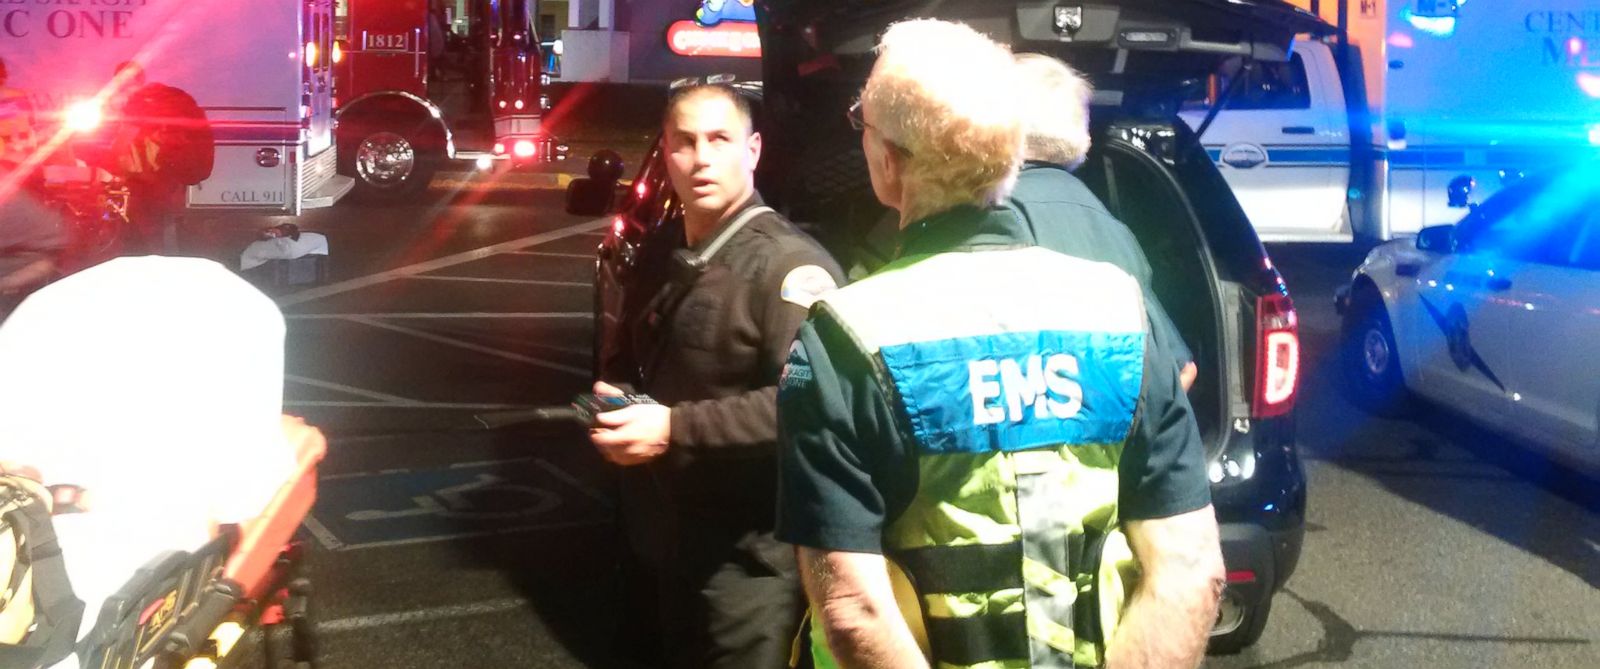 Νεκροί και τραυματίες από την επίθεση σε εμπορικό κέντρο στο Μπέρλινγκτον